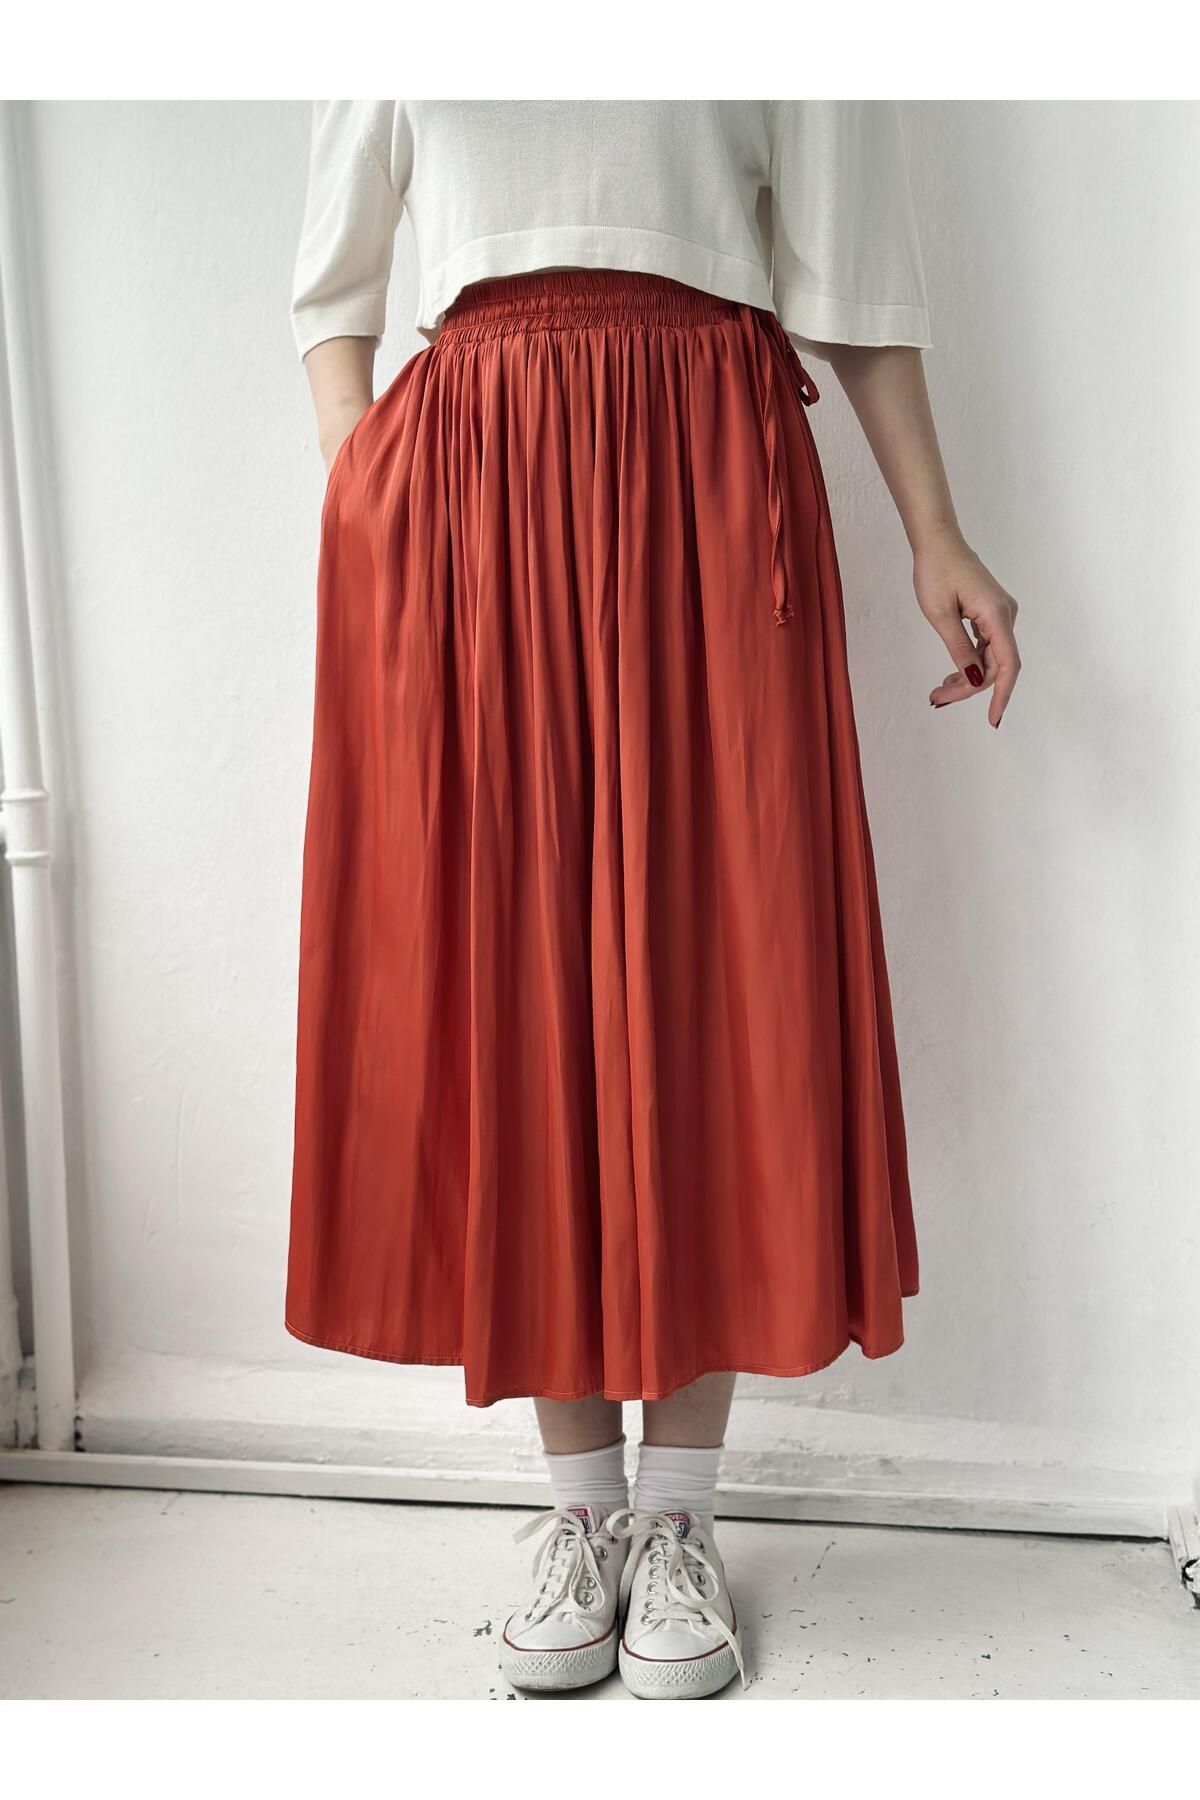 Retrobird High Waist Slit Midi Length Patterned Women's Skirt